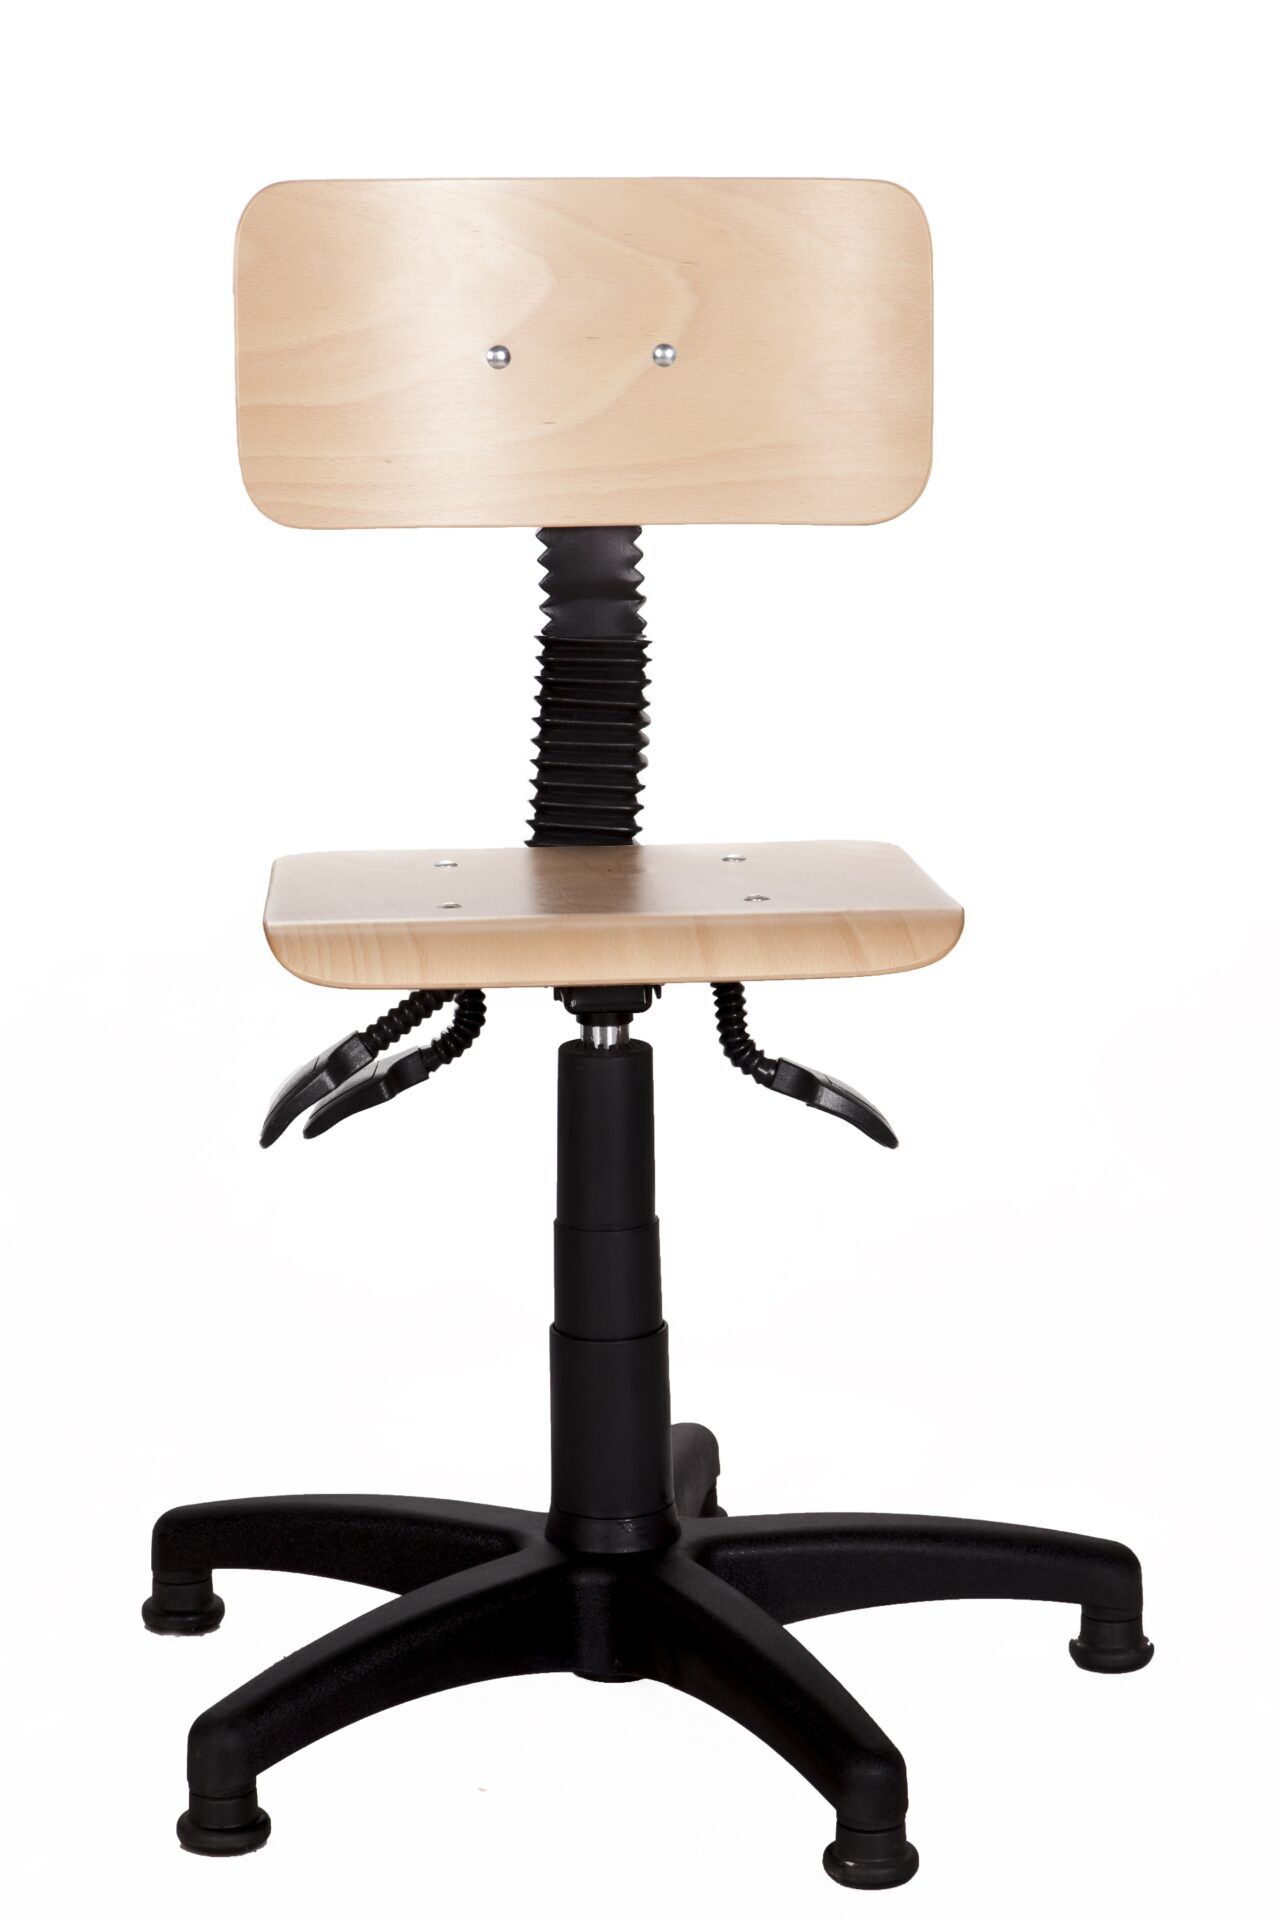 Drewniane krzesło laboratoryjne z regulacją od przodu B-Group